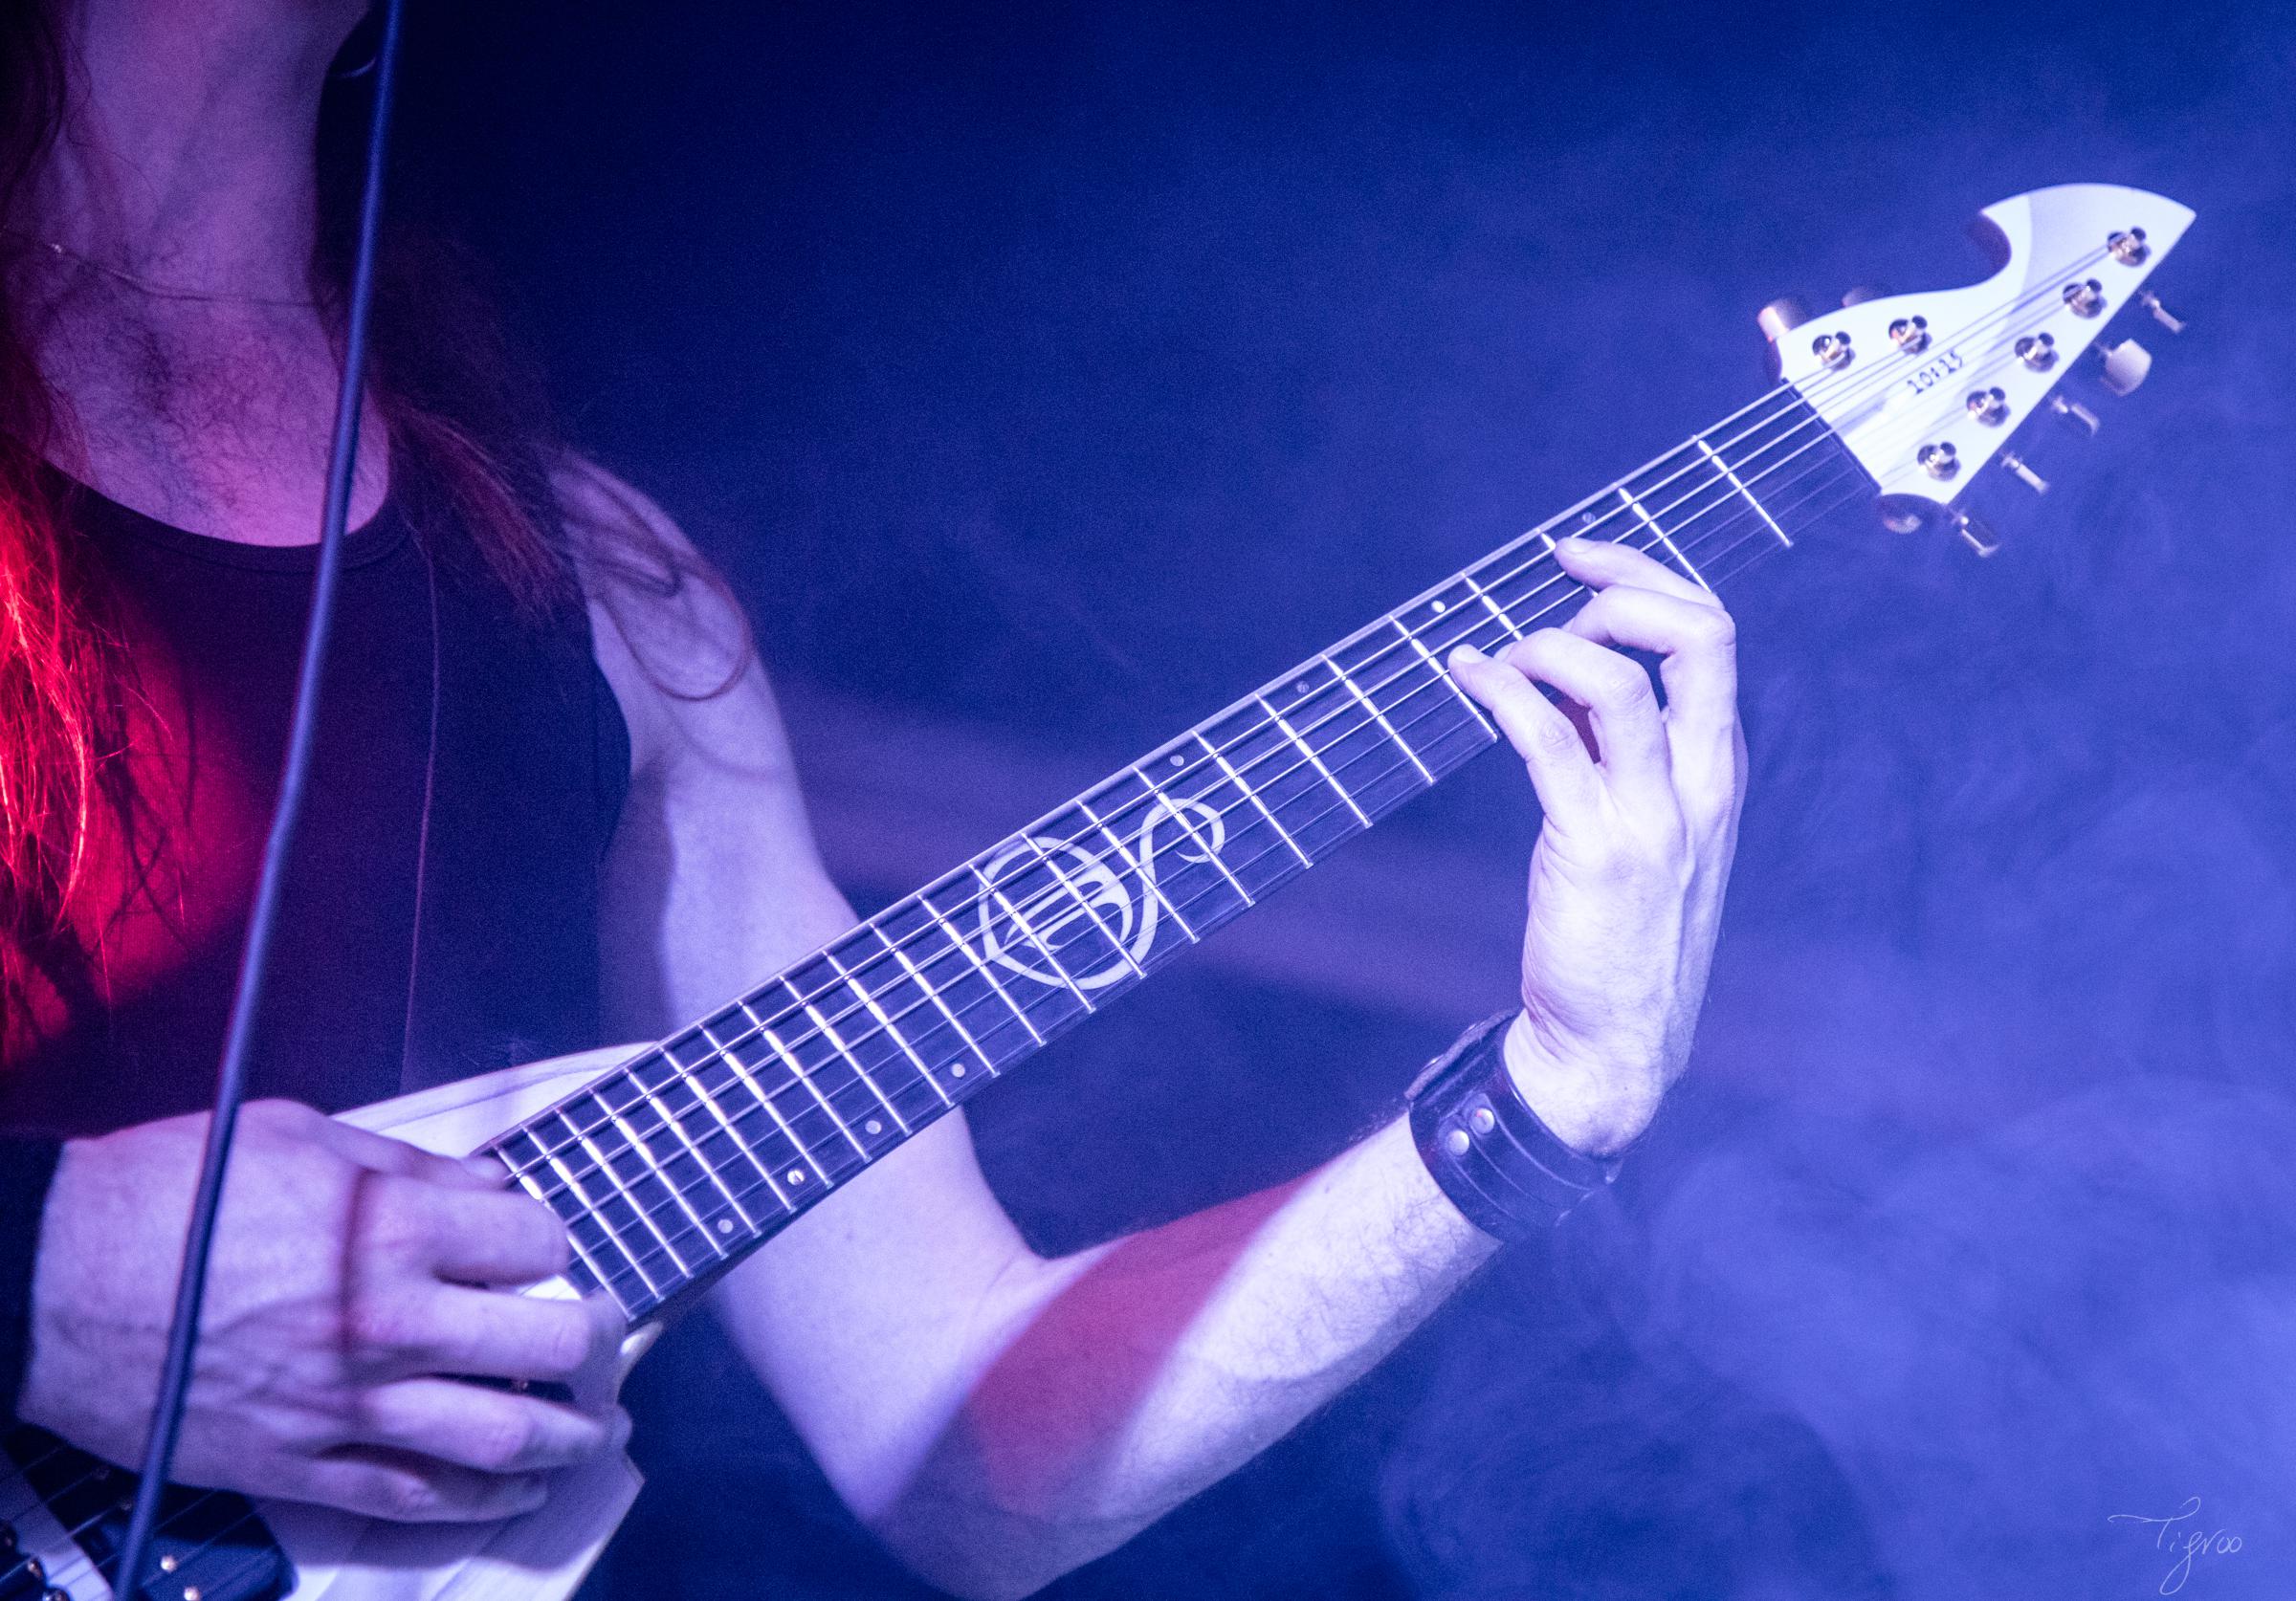 concert Season of Tears musique symphonic death metal Matthis Lemonnier guitare 10:15